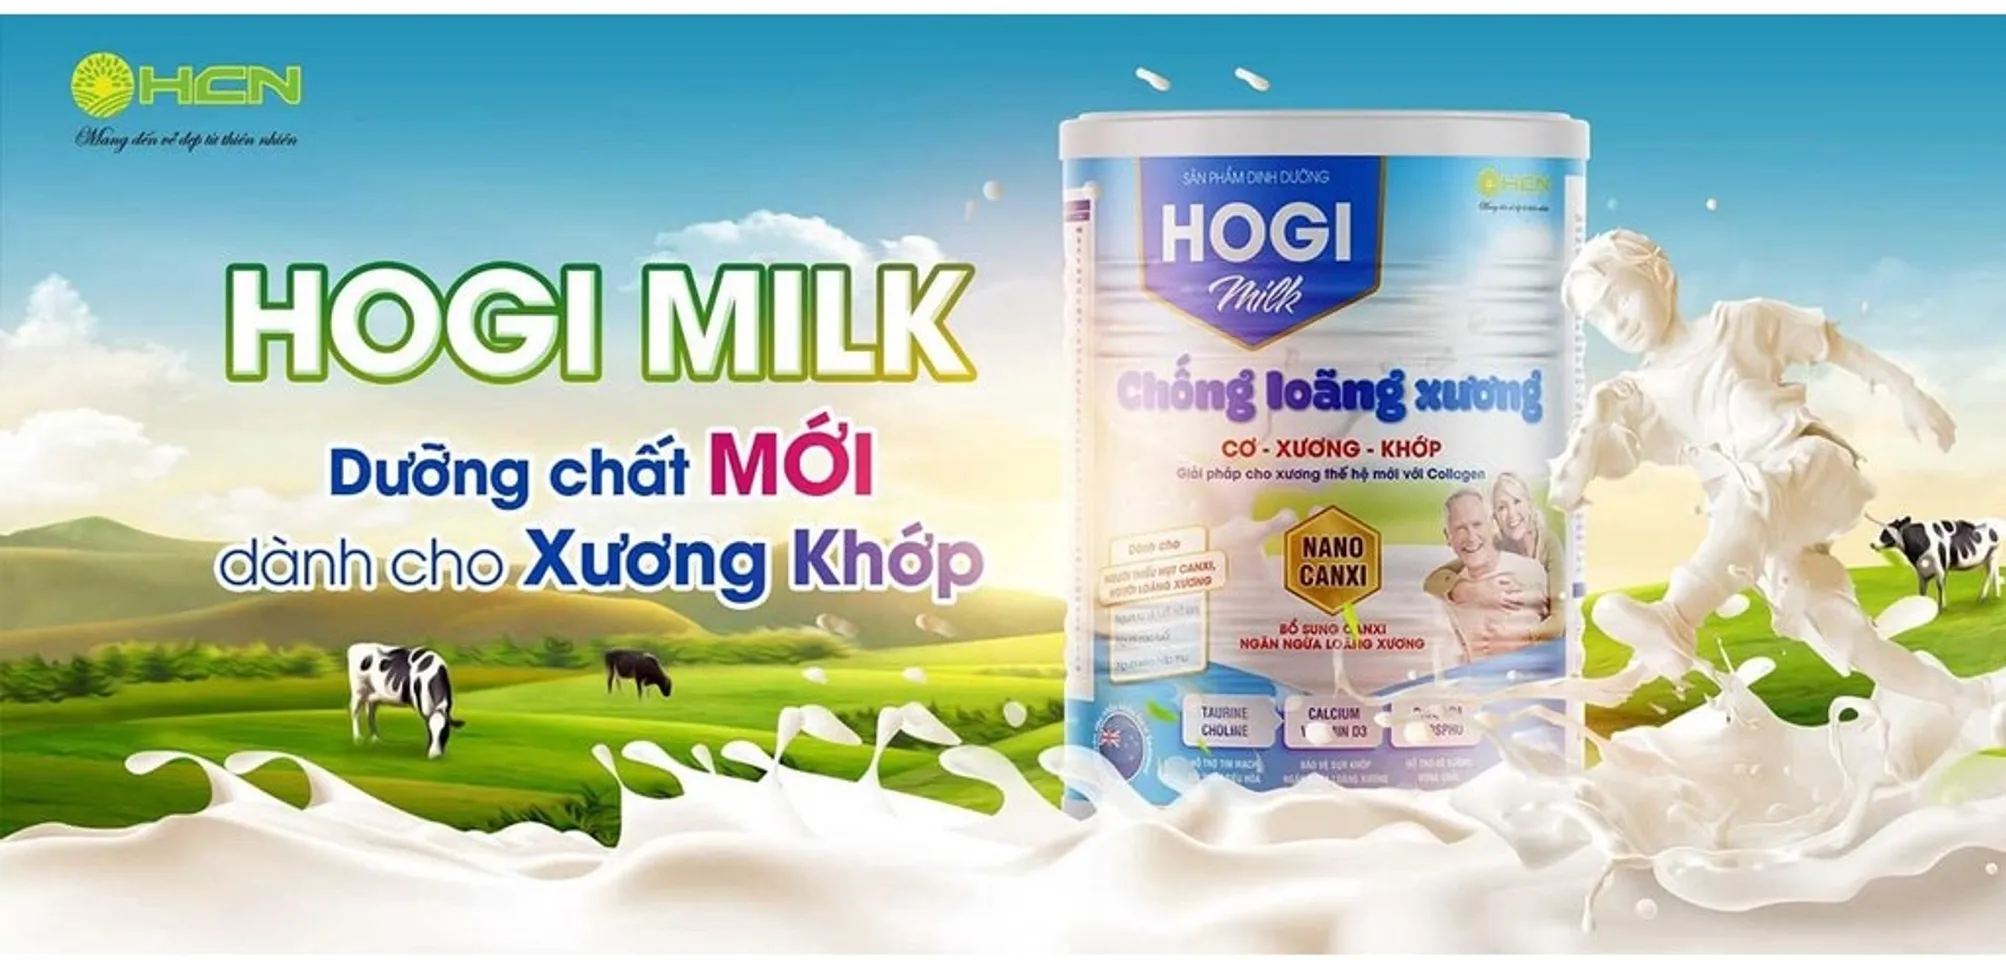 Sữa Hogi Milk thơm ngon giàu dinh dưỡng